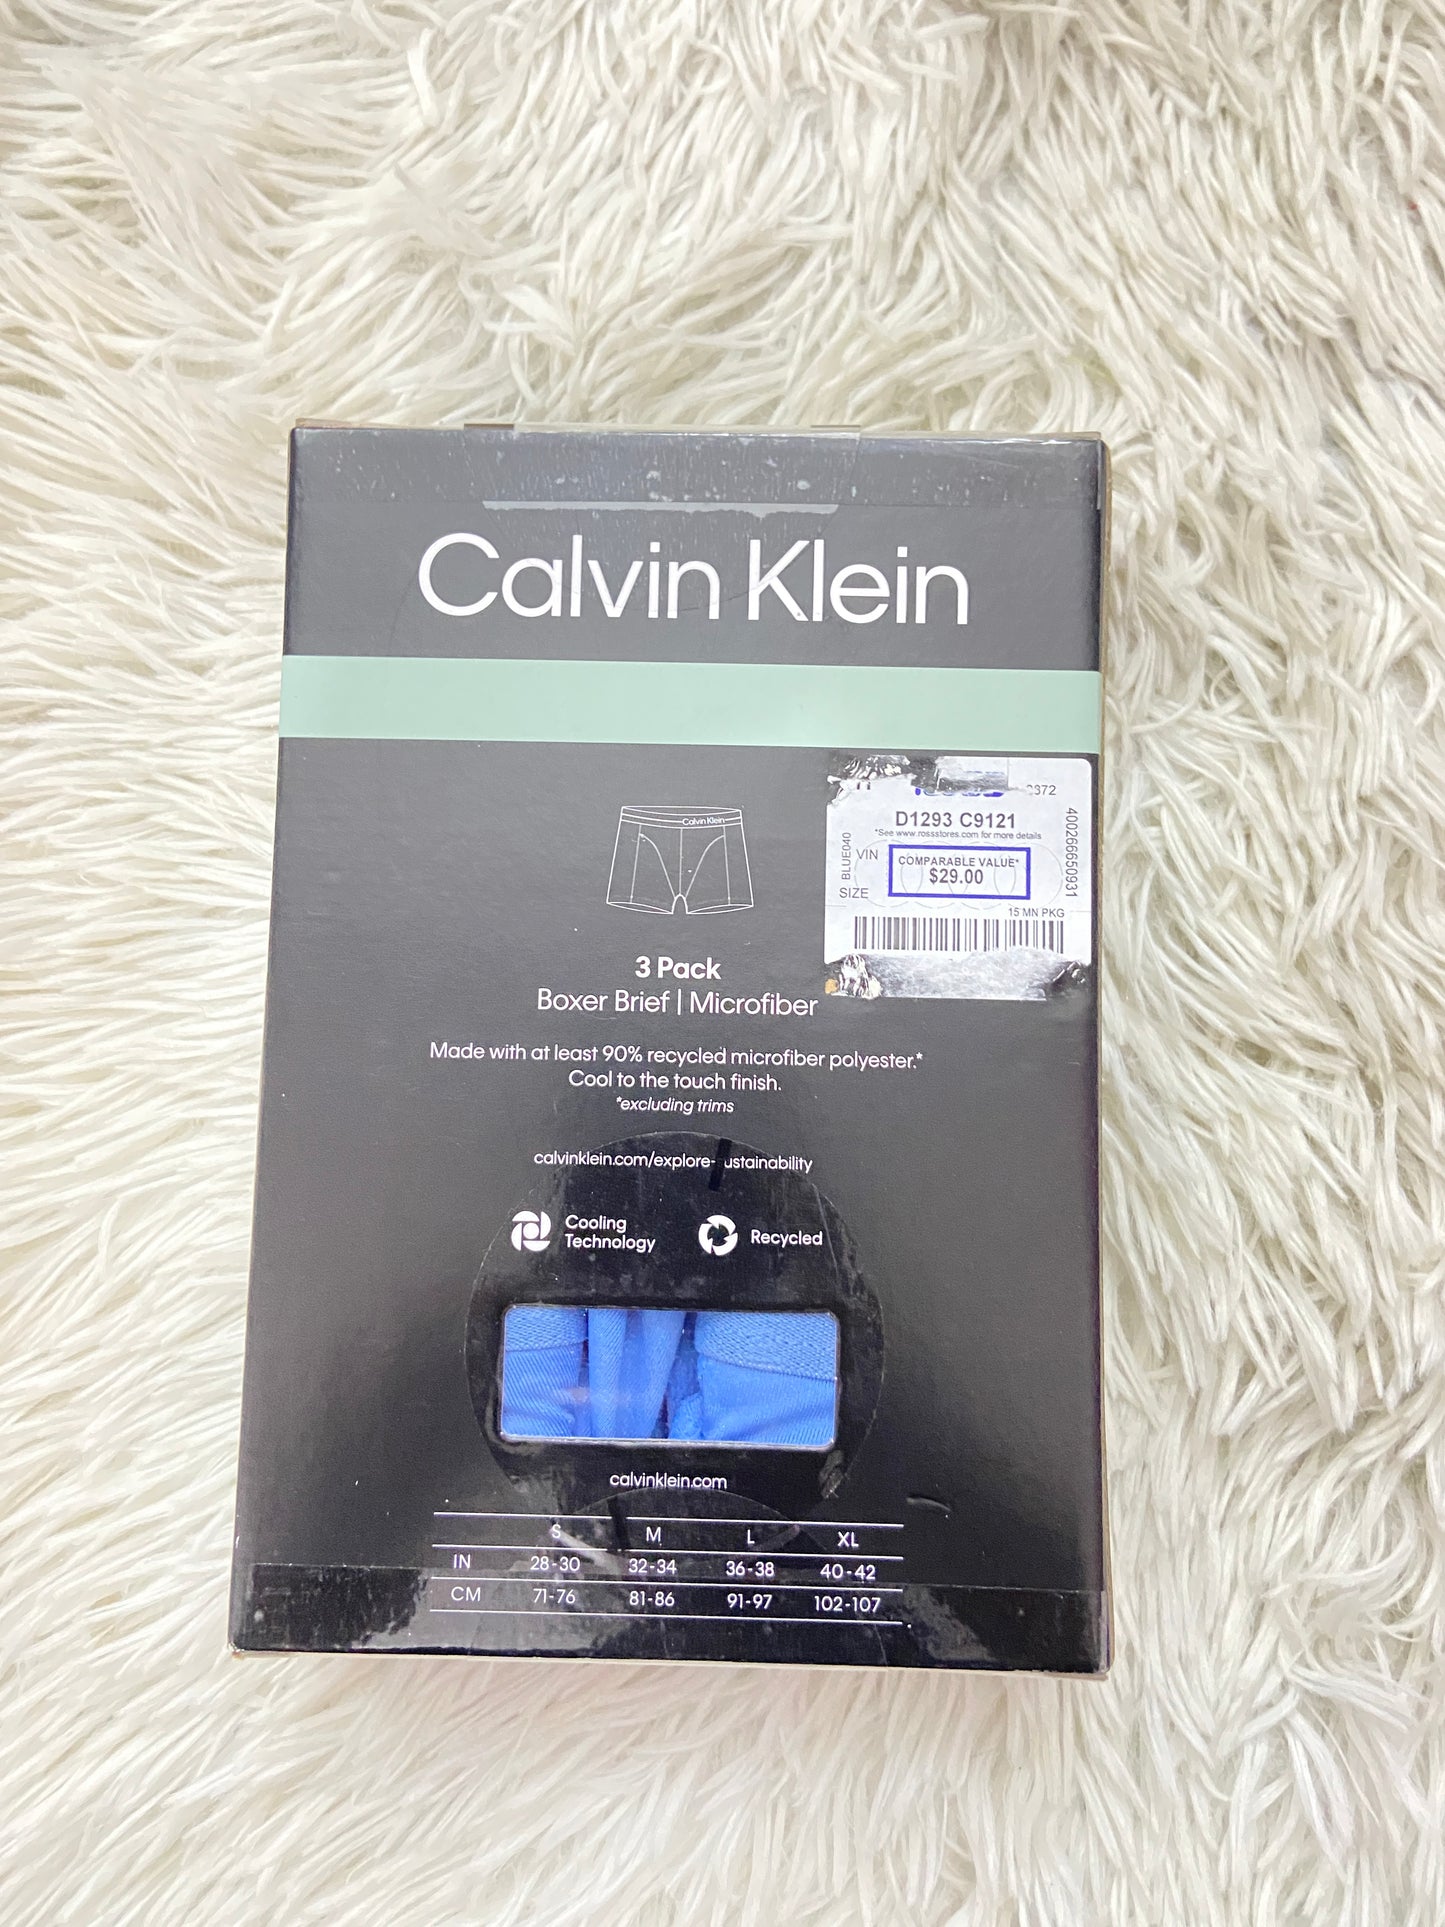 Boxer Calvin Klein original, pack de 3, diferentes tonos de azules y letras de la marca en negro.